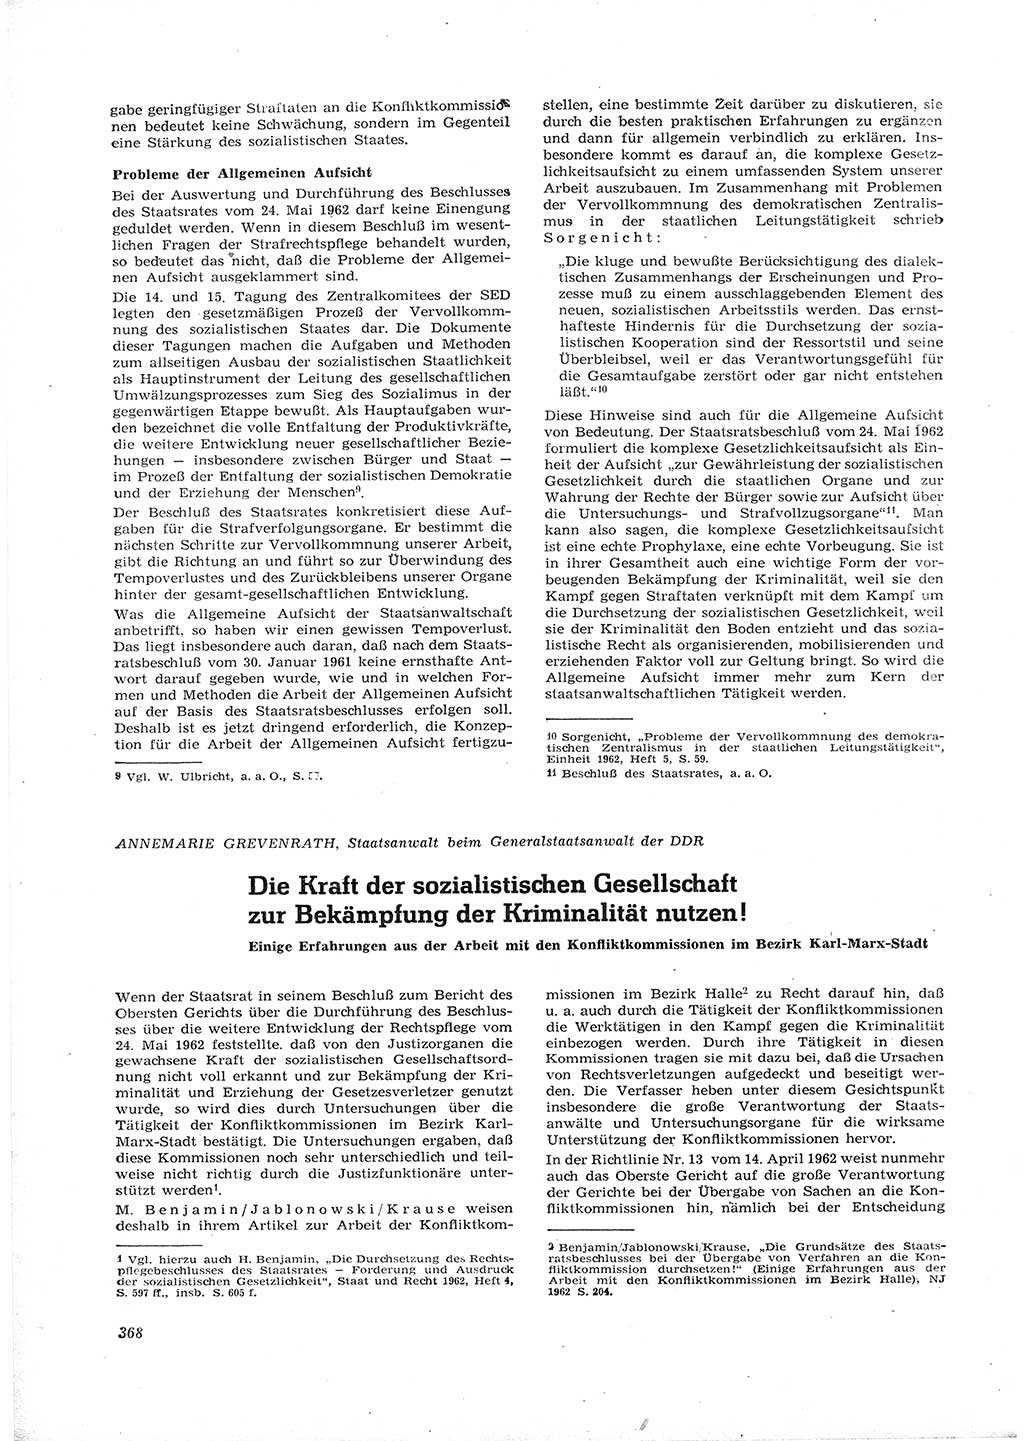 Neue Justiz (NJ), Zeitschrift für Recht und Rechtswissenschaft [Deutsche Demokratische Republik (DDR)], 16. Jahrgang 1962, Seite 368 (NJ DDR 1962, S. 368)